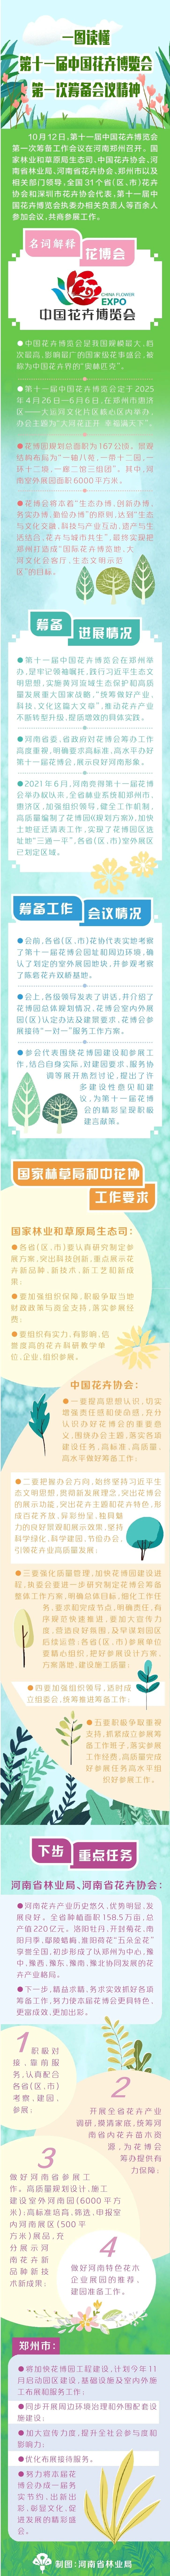 一图读懂  第十一届中国花卉博览会  第一次筹备会议精神